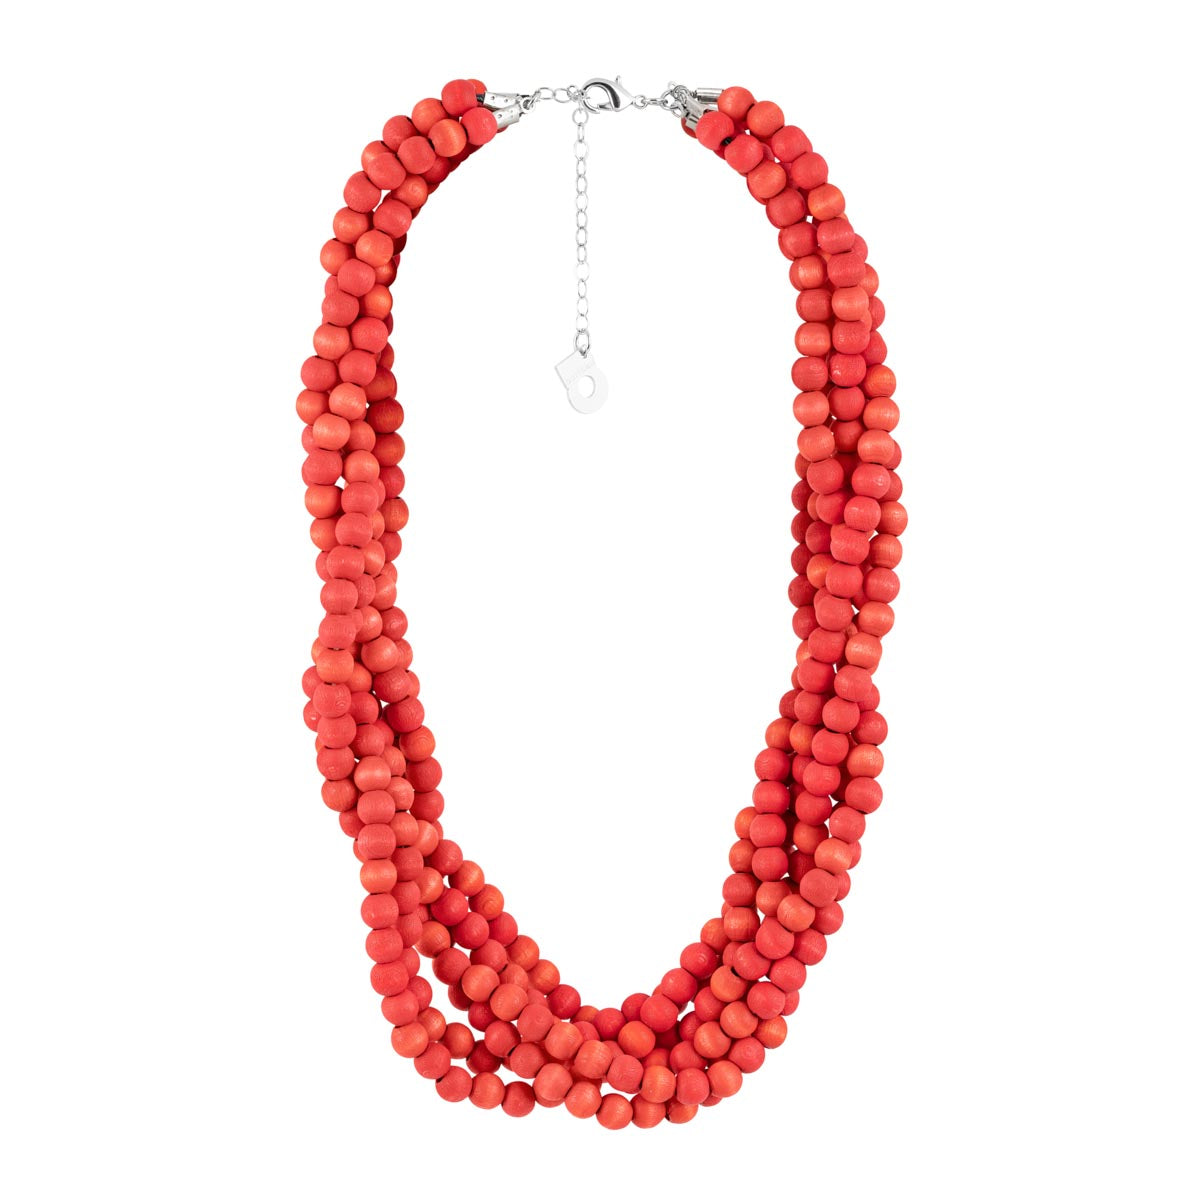 Elisabeth necklace, red